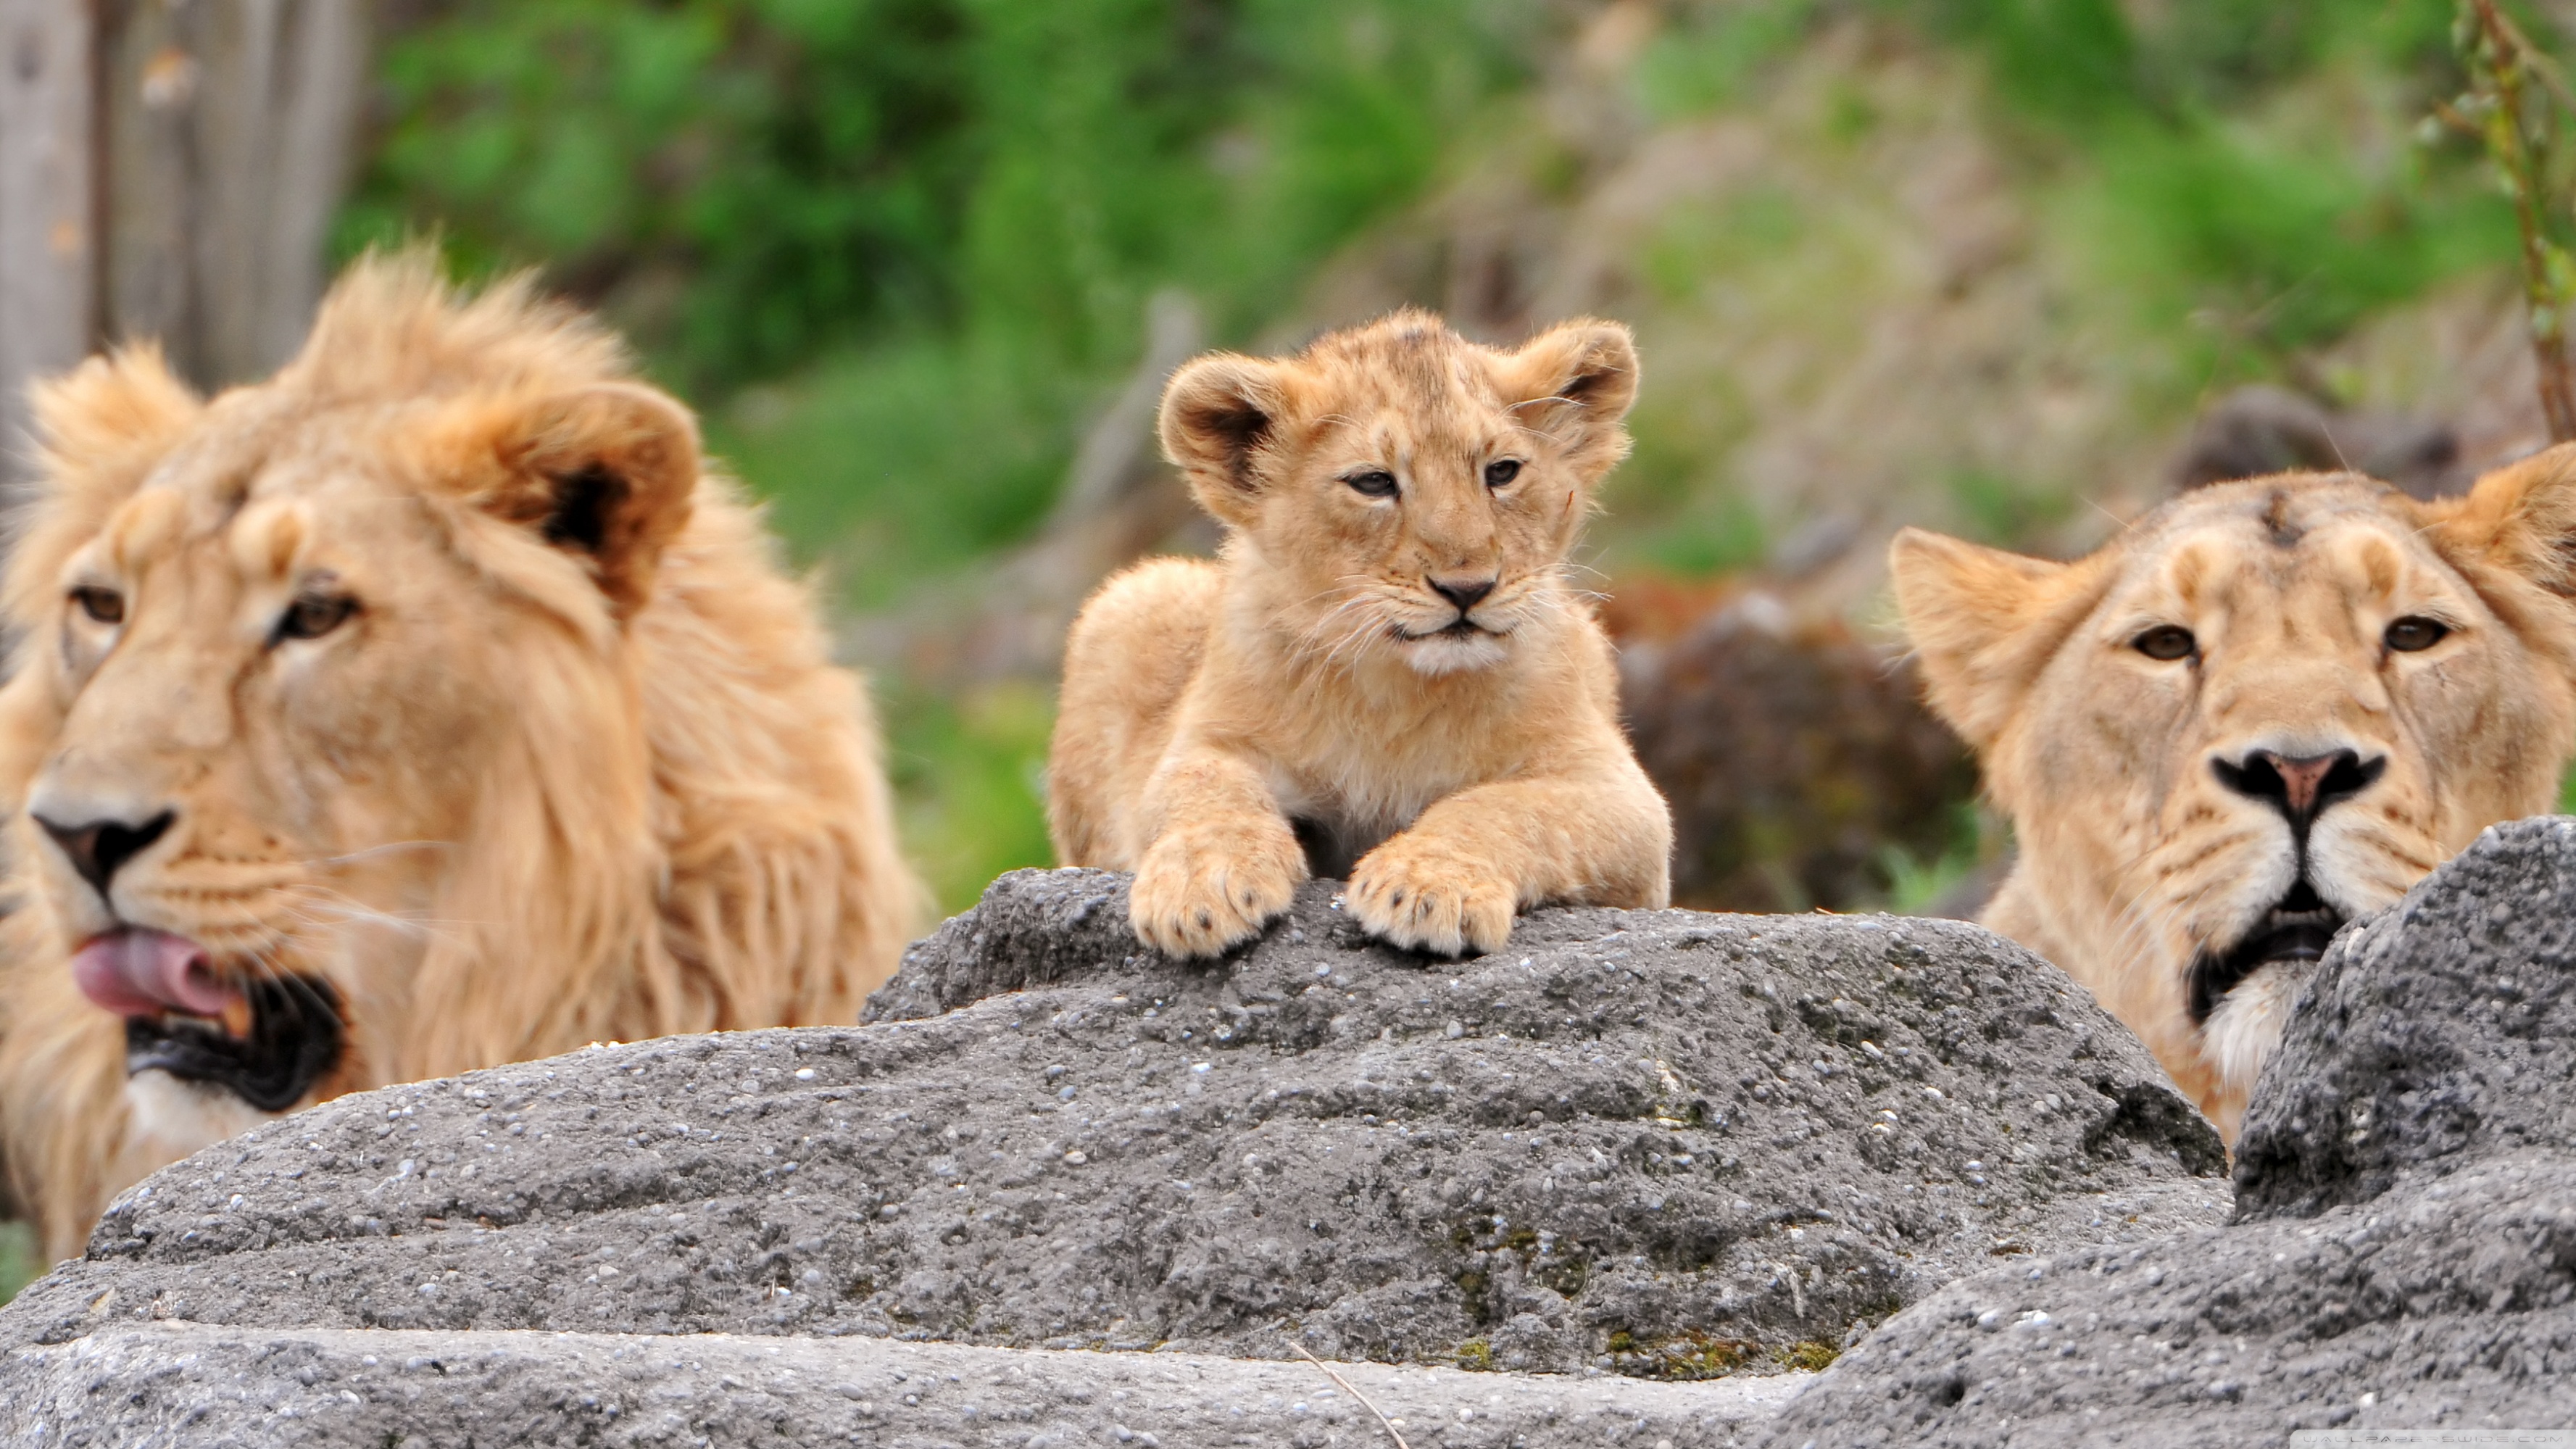 Cub Lion Lioness 3554x1999